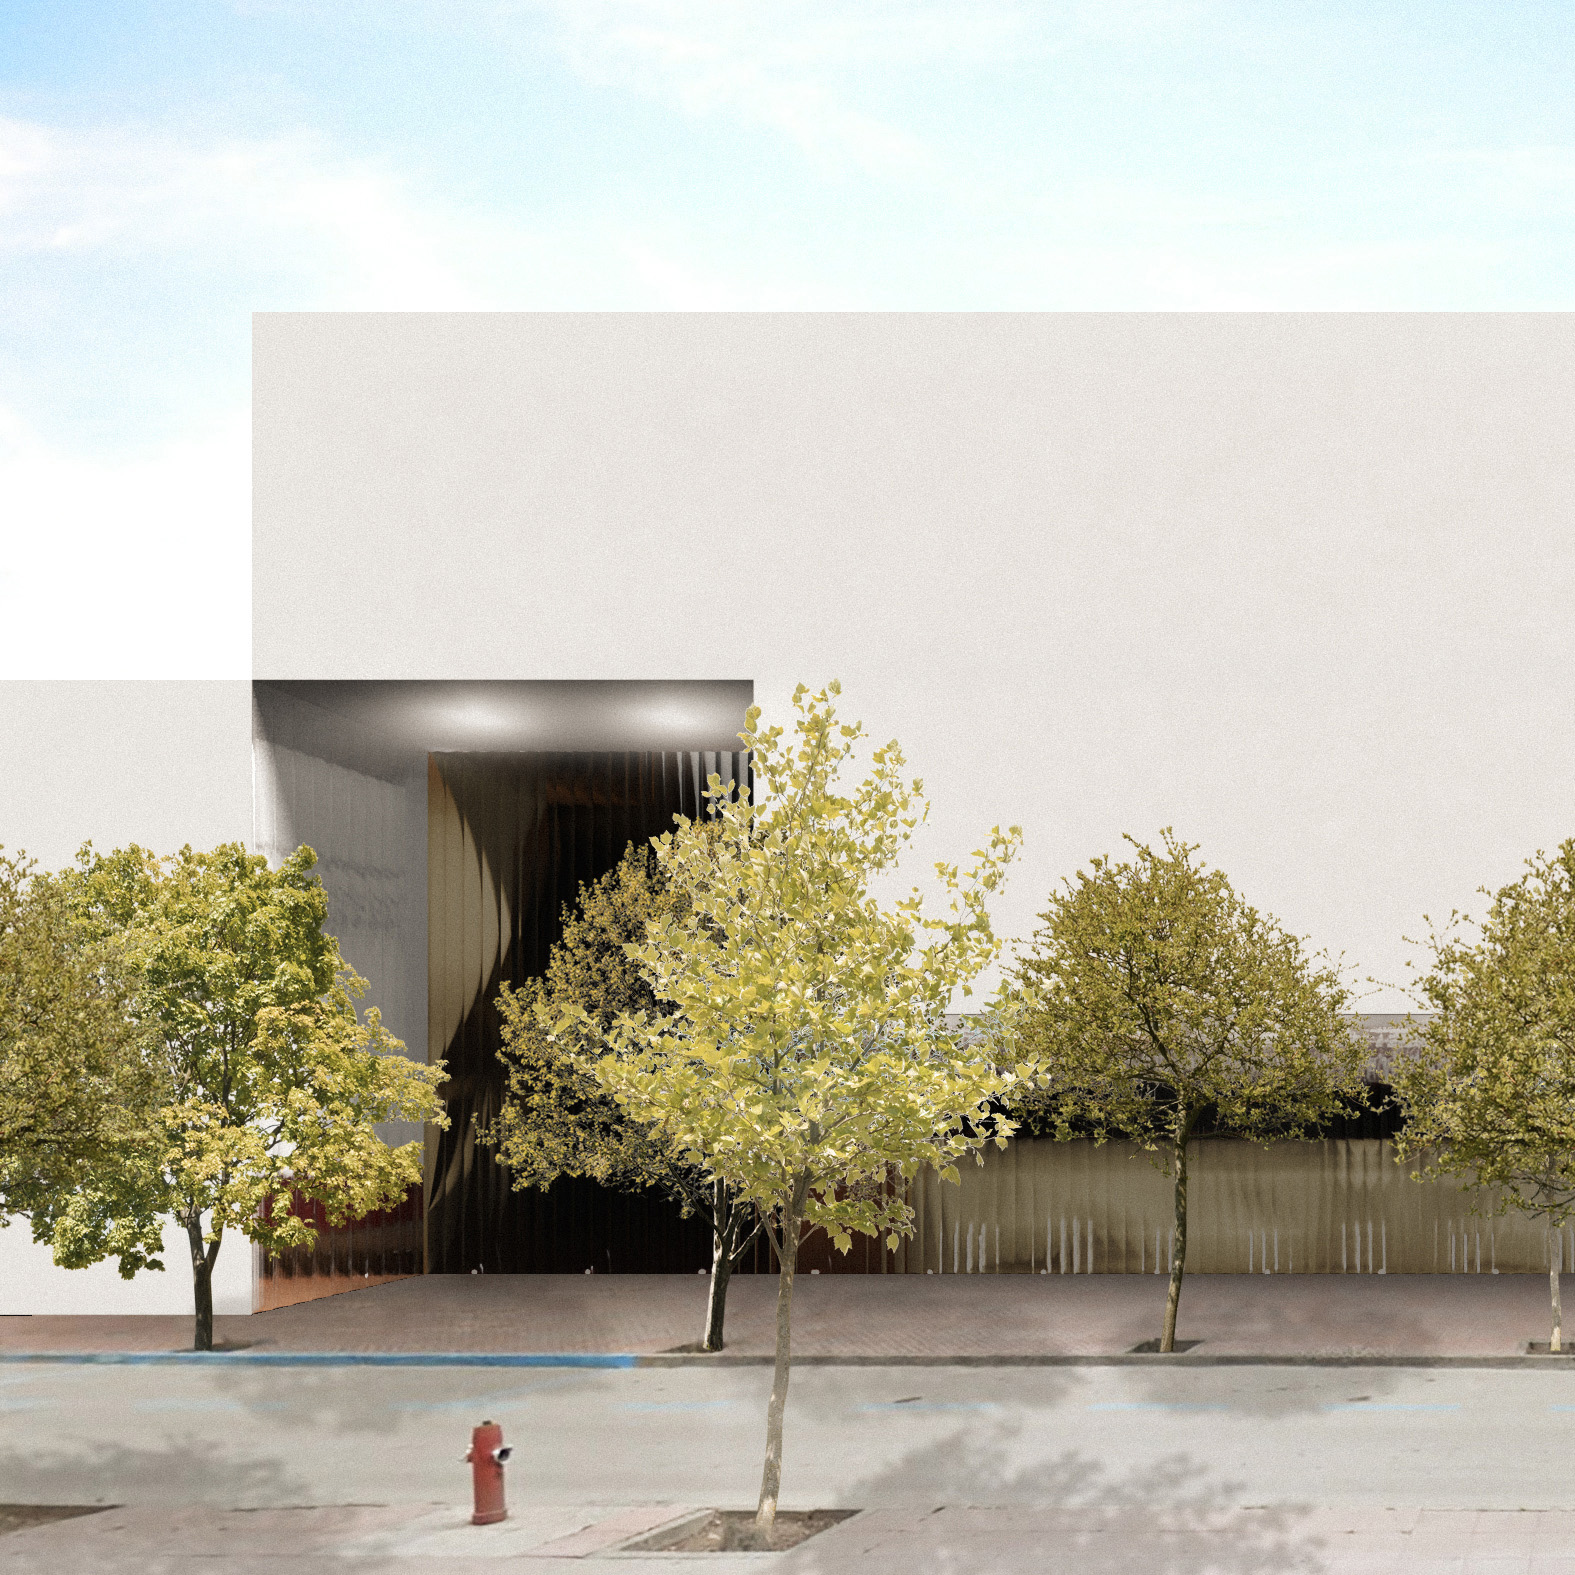 Project THE CASTLE & THE VINE by Recon Architecture, architecture studio in Bilbao